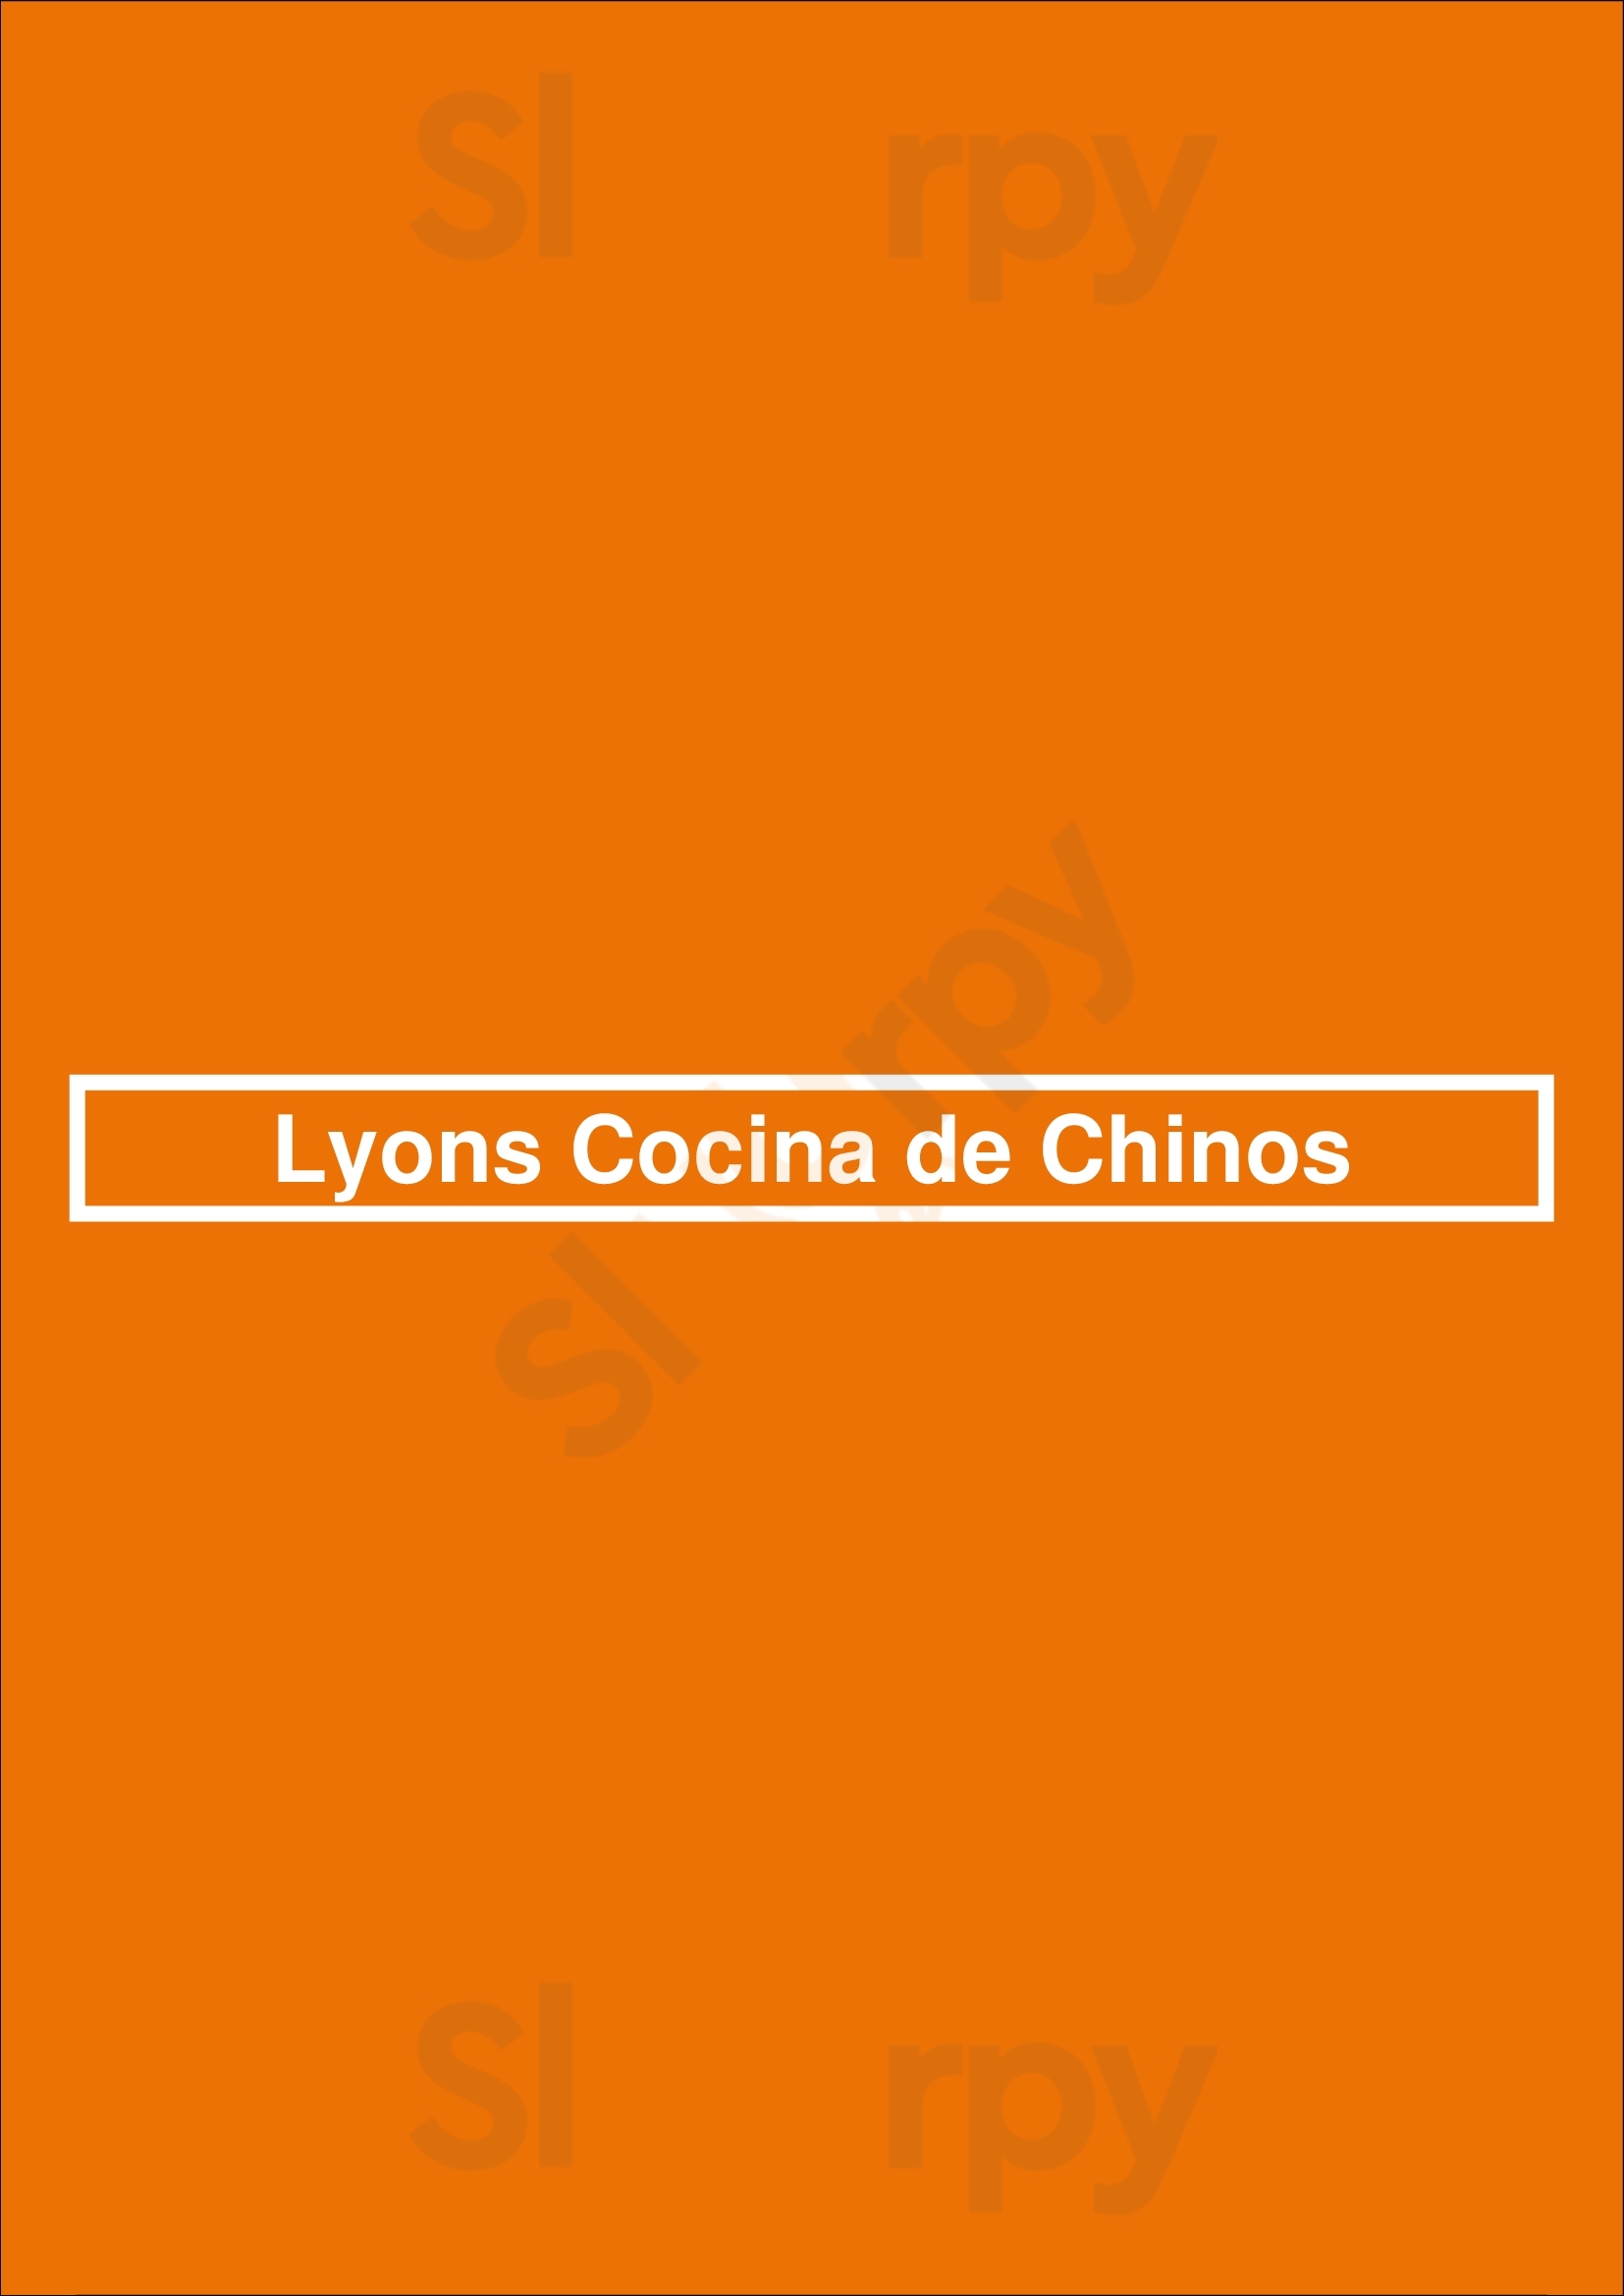 Lyons Cocina De Chinos Houston Menu - 1